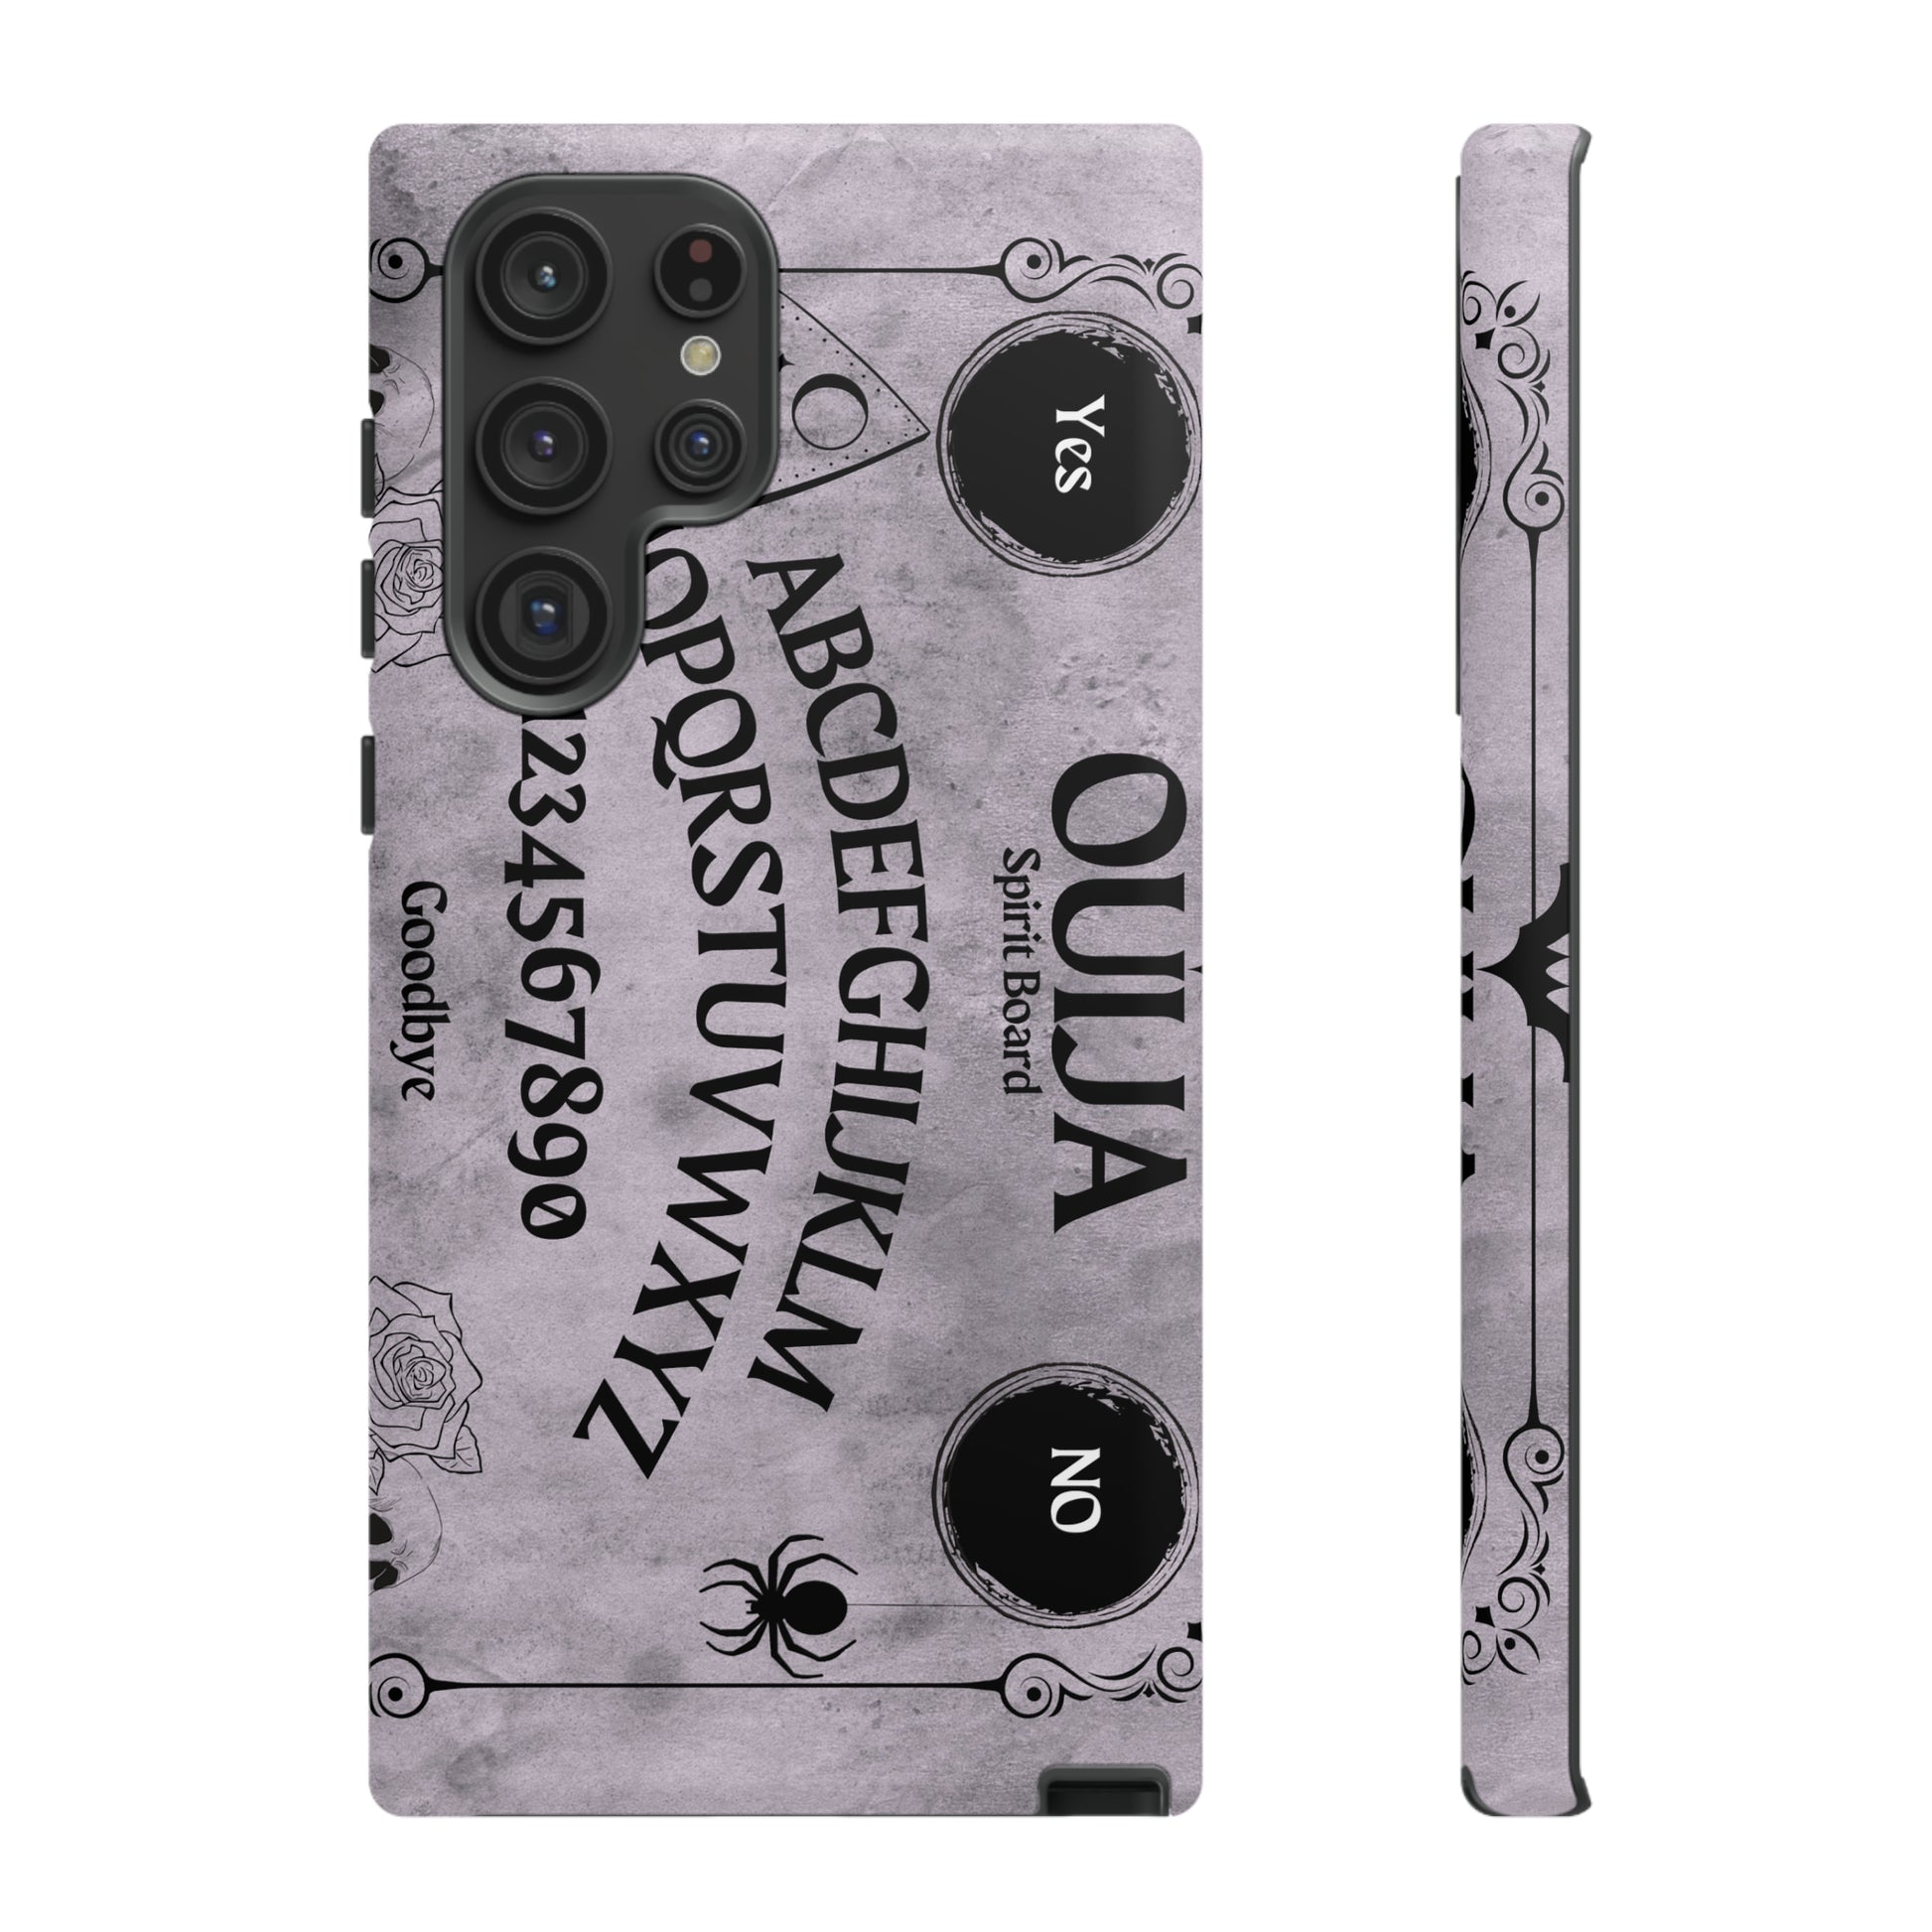 Ouija Board Tough Phone Cases For Samsung iPhone GooglePhone CaseVTZdesignsSamsung Galaxy S22 UltraMatteAccessoriesGlossyhalloween